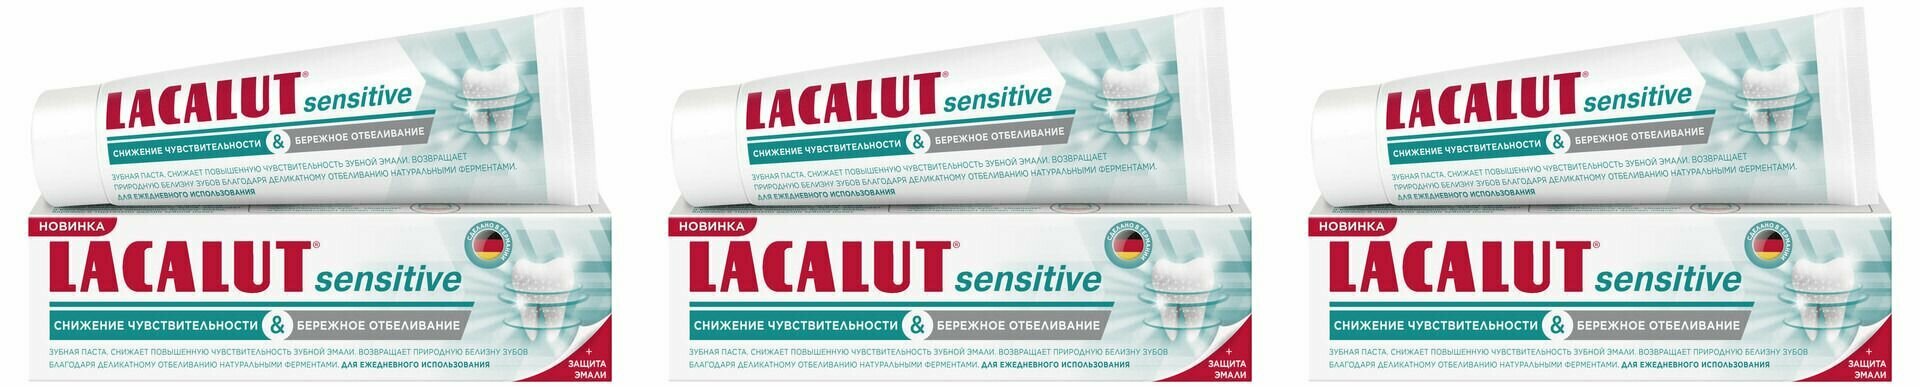 Lacalut Зубная паста Sensitiv Снижение чувствительности и бережное отбеливание, 75 мл, 3 штуки